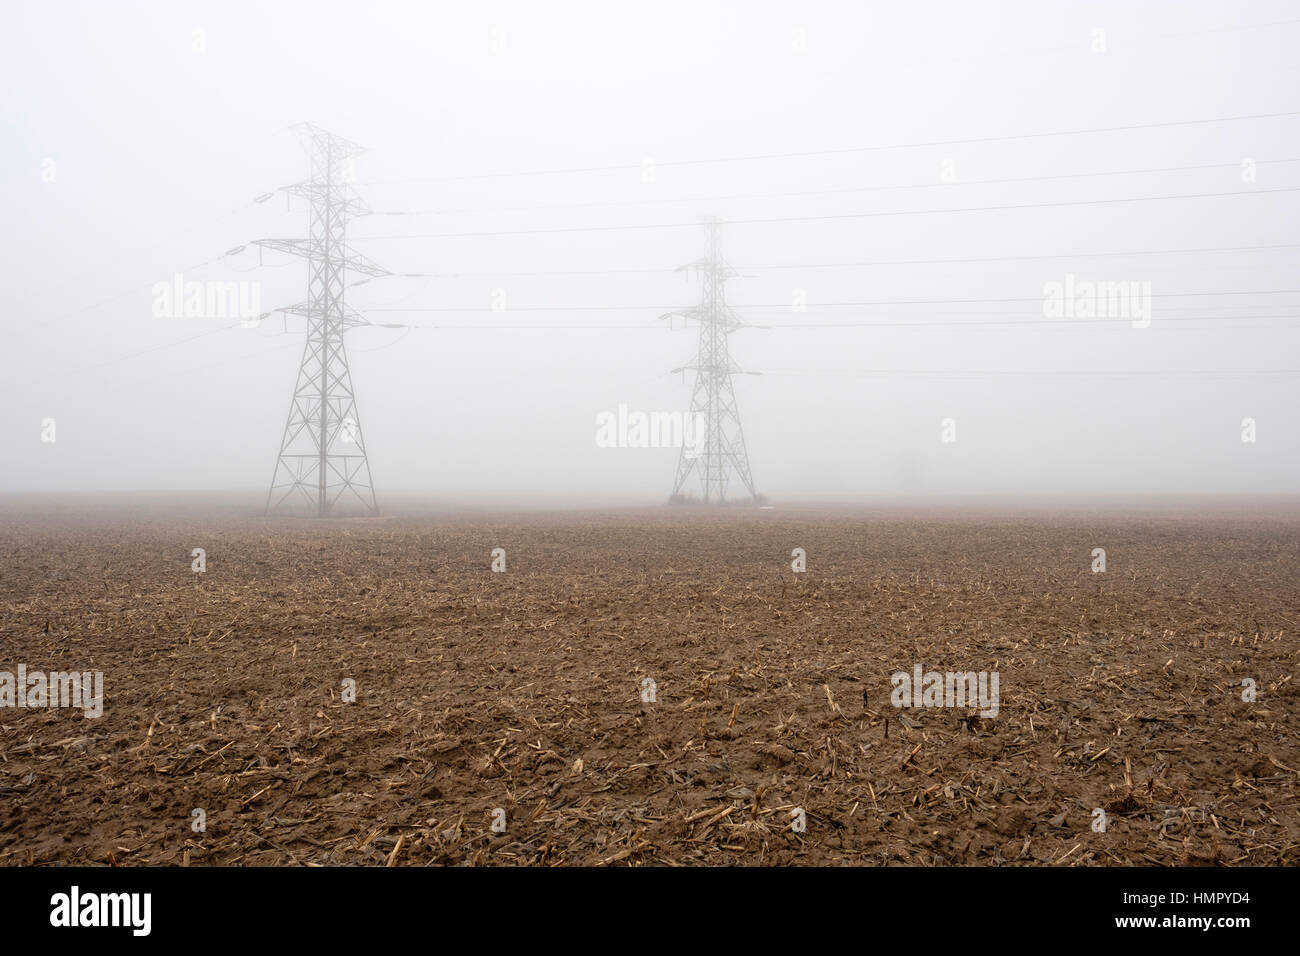 Deux tours de la ligne d'alimentation / pylônes dans un champ agricole sous un épais brouillard dans le sud-ouest de l'Ontario, Canada. Banque D'Images